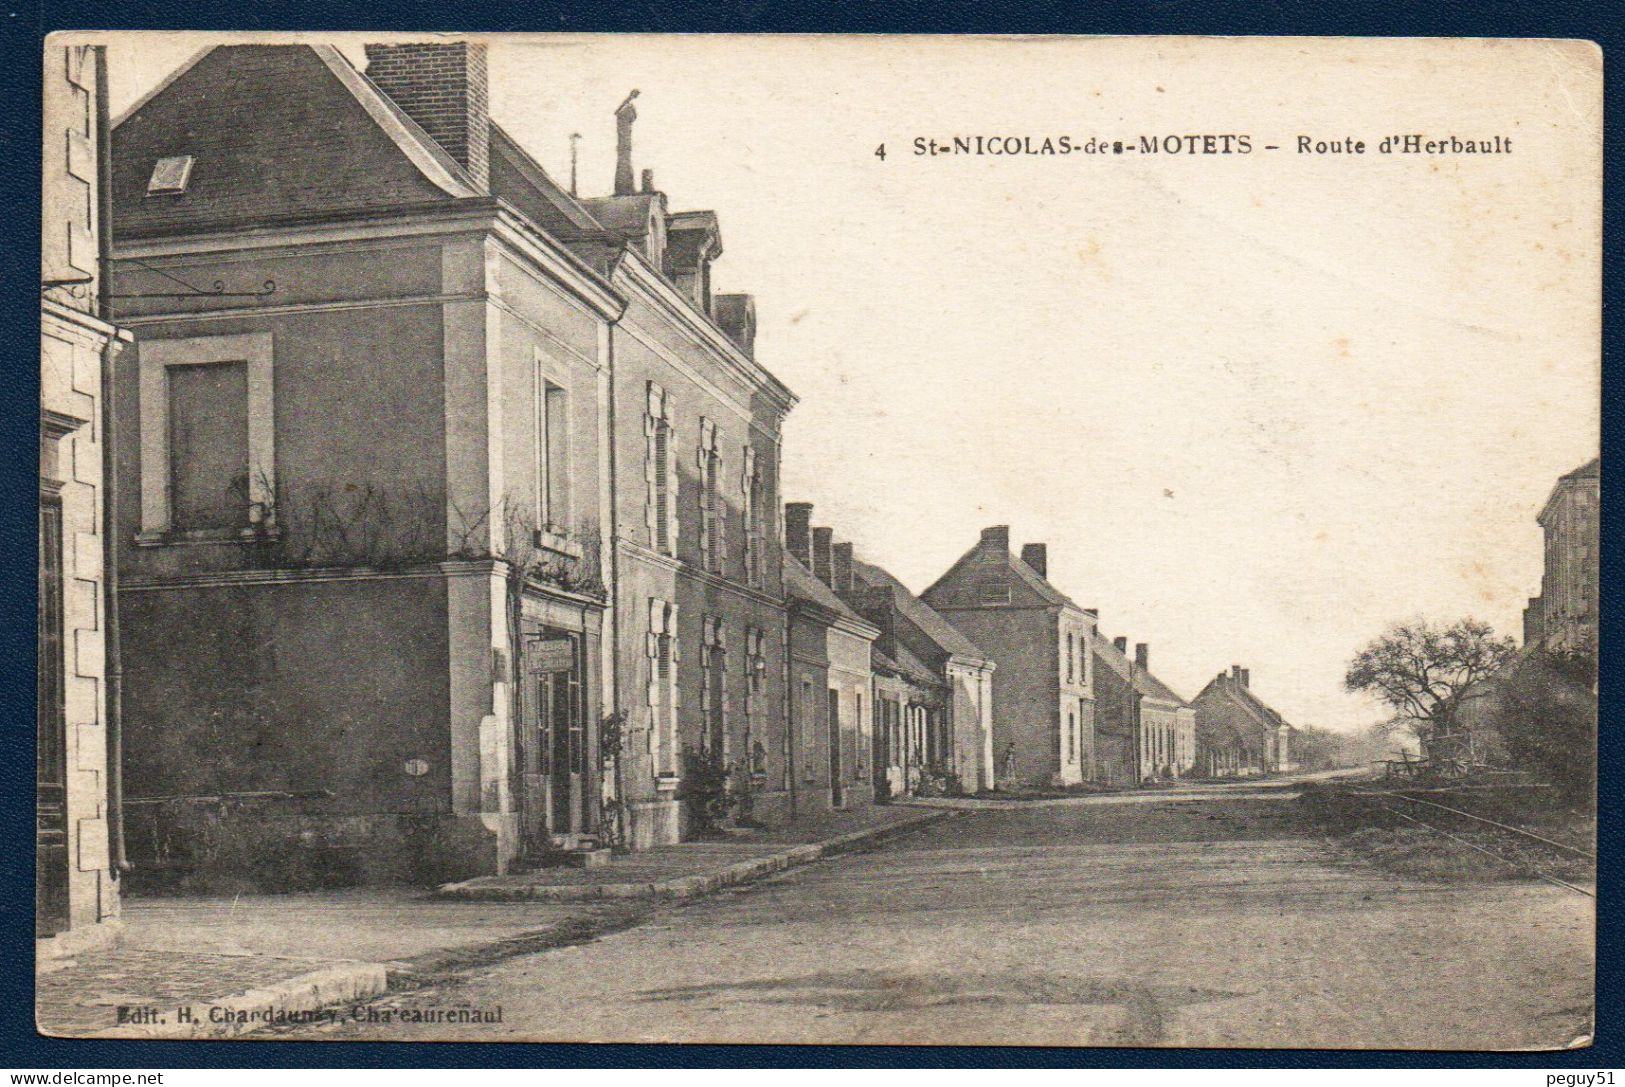 37. Environs D'Amboise. St. Nicolas -des-Motets. Route D' Herbault. Bureau De Tabac, Presse (Le Matin). 1917 - Amboise